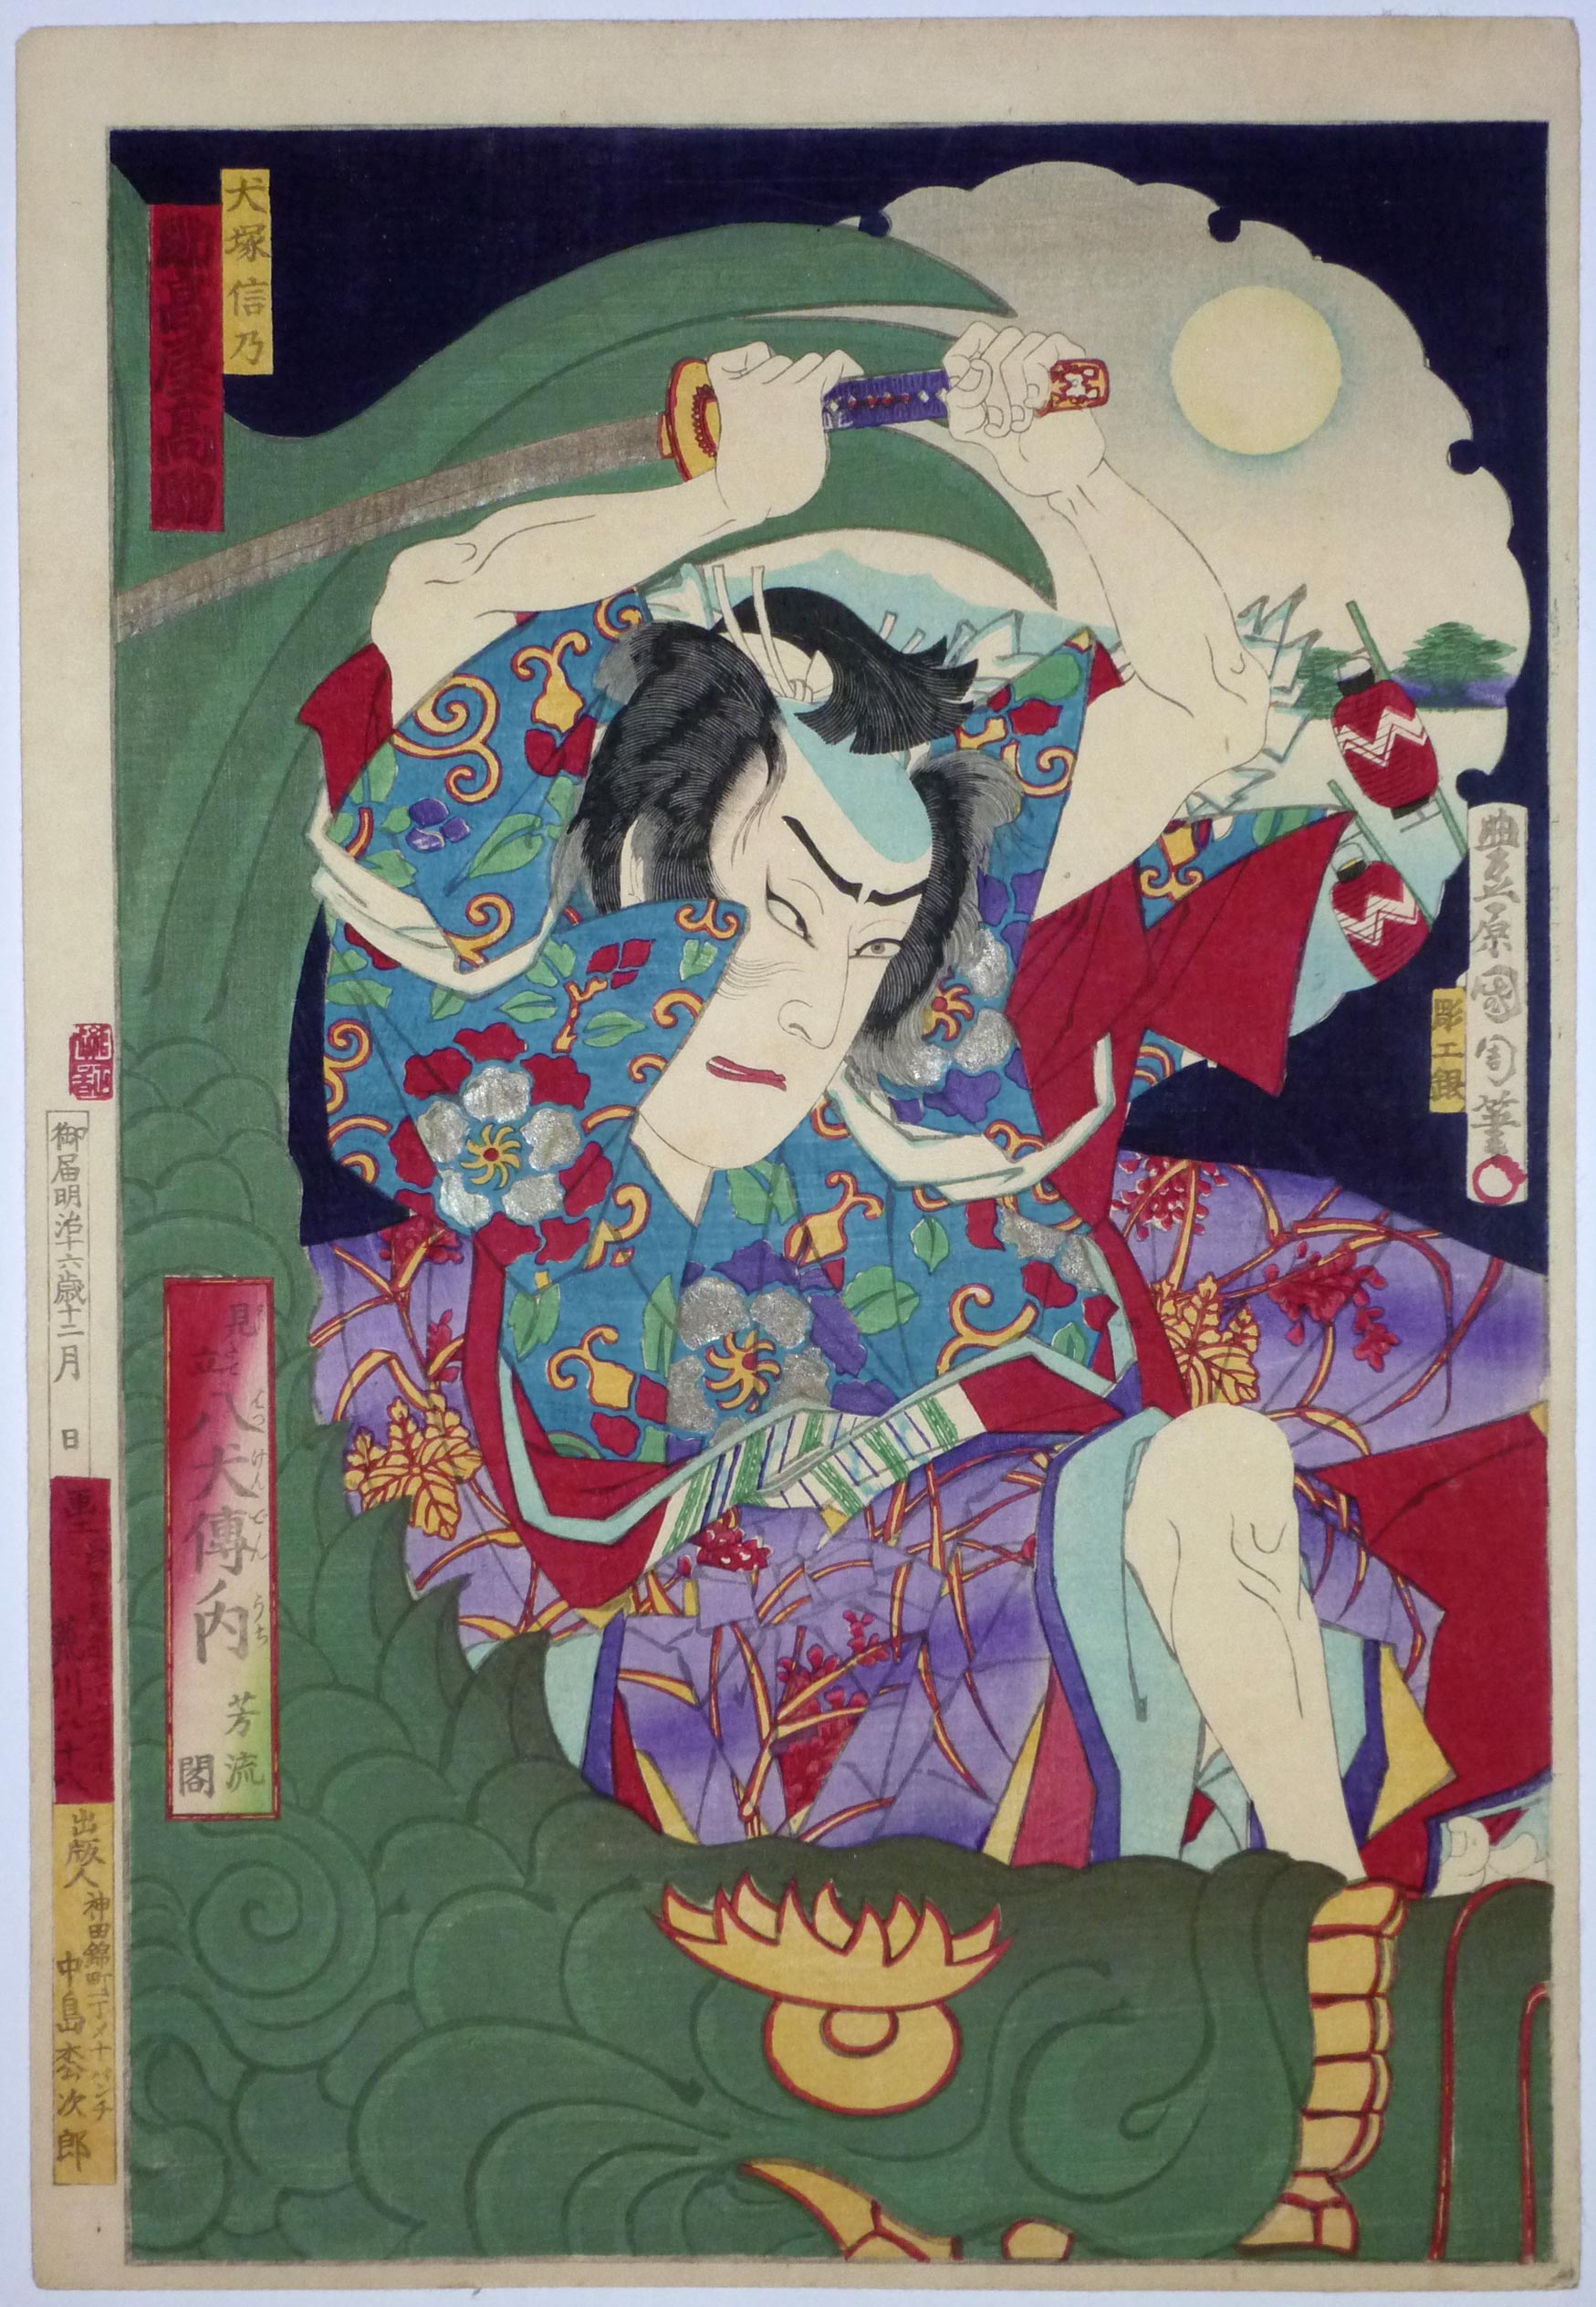 Toyohara Kunichika - June 30, 1835 - July 1, 1900